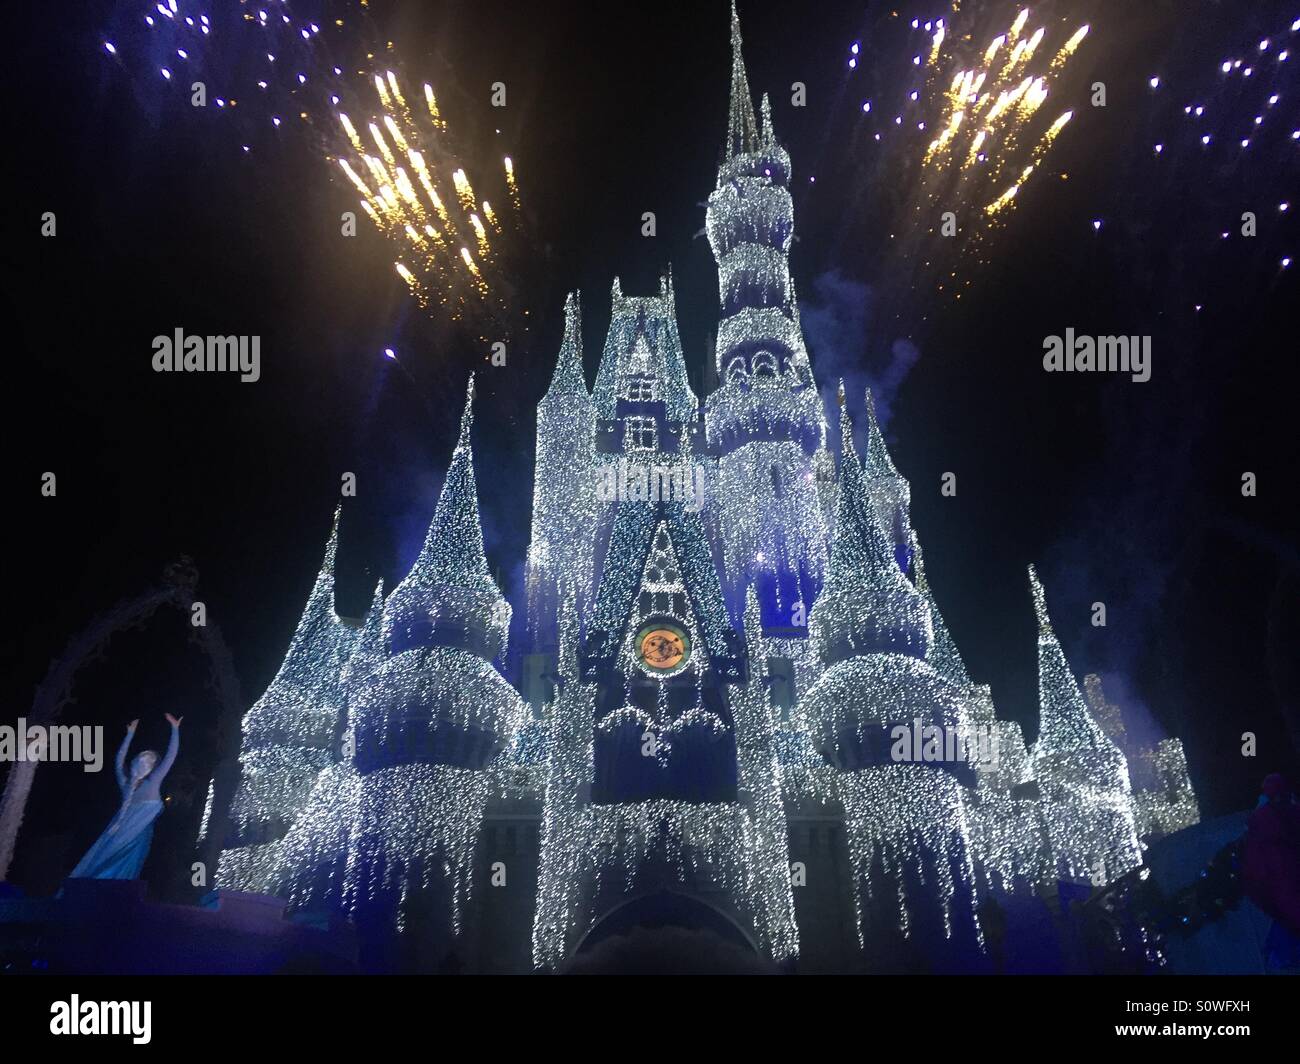 Disney castle weihnachtsbeleuchtung -Fotos und -Bildmaterial in hoher  Auflösung – Alamy